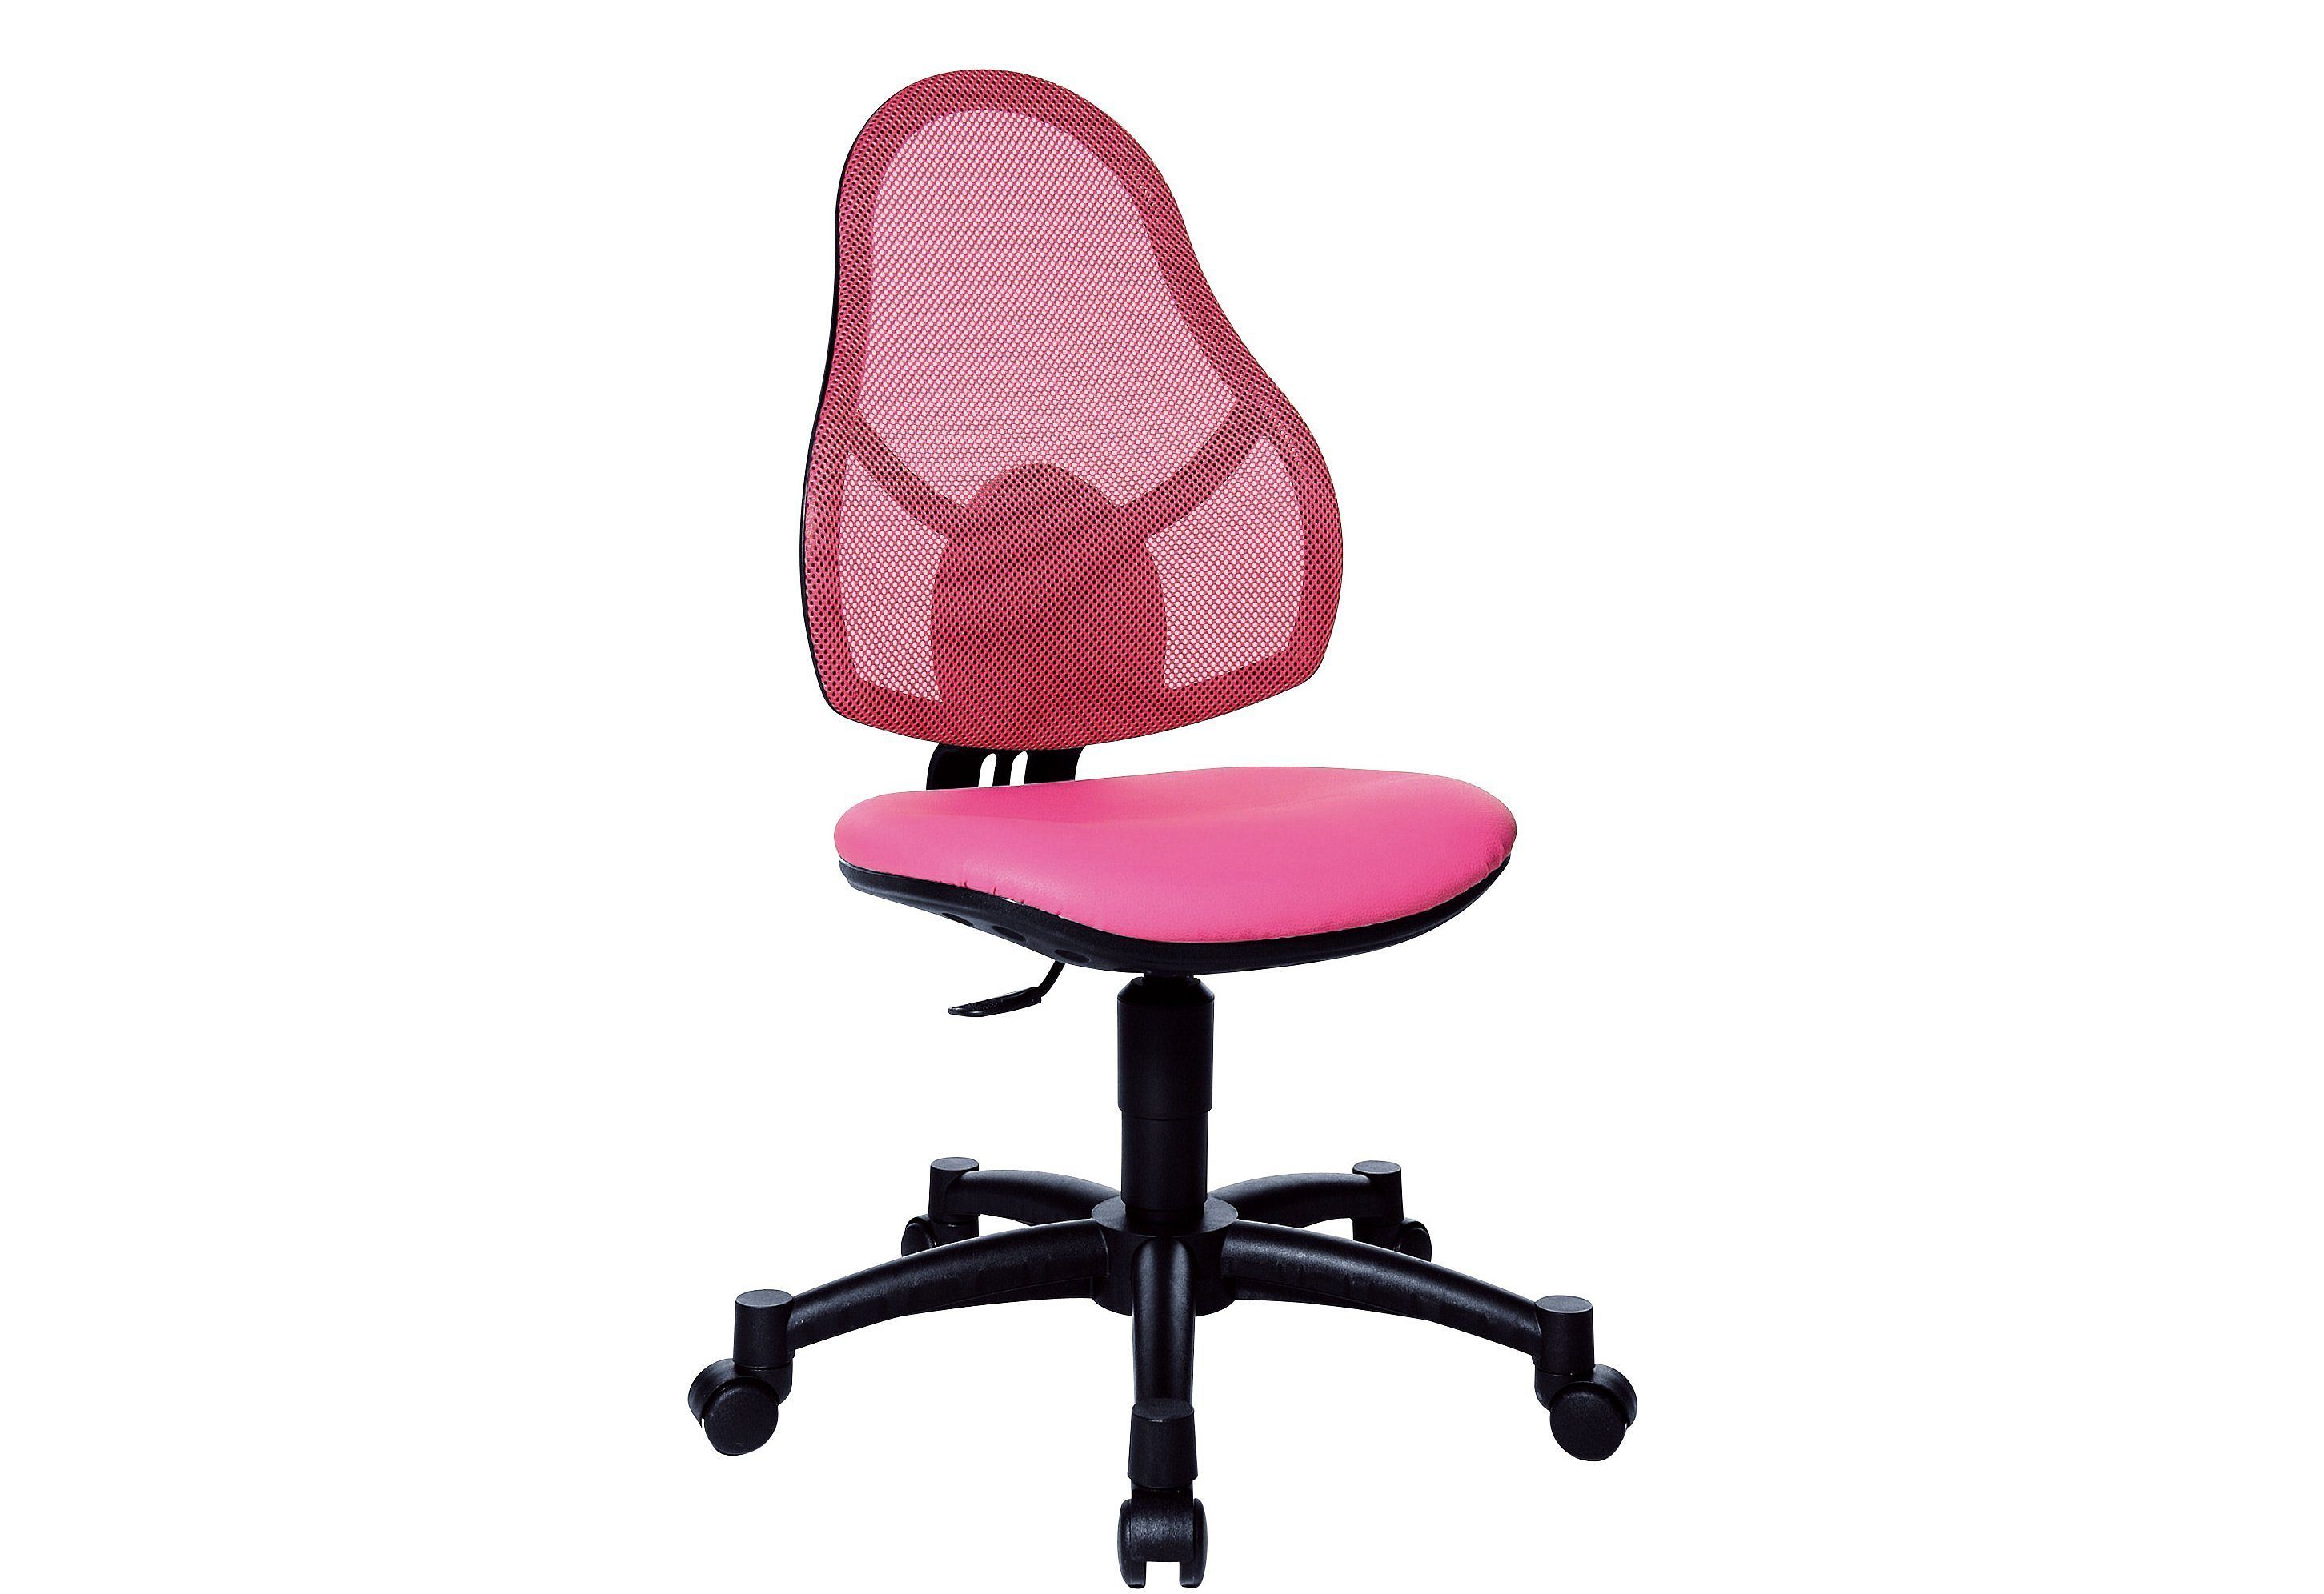 TOPSTAR Bürostuhl, für Kinder geeignet, in 4 Farben pink